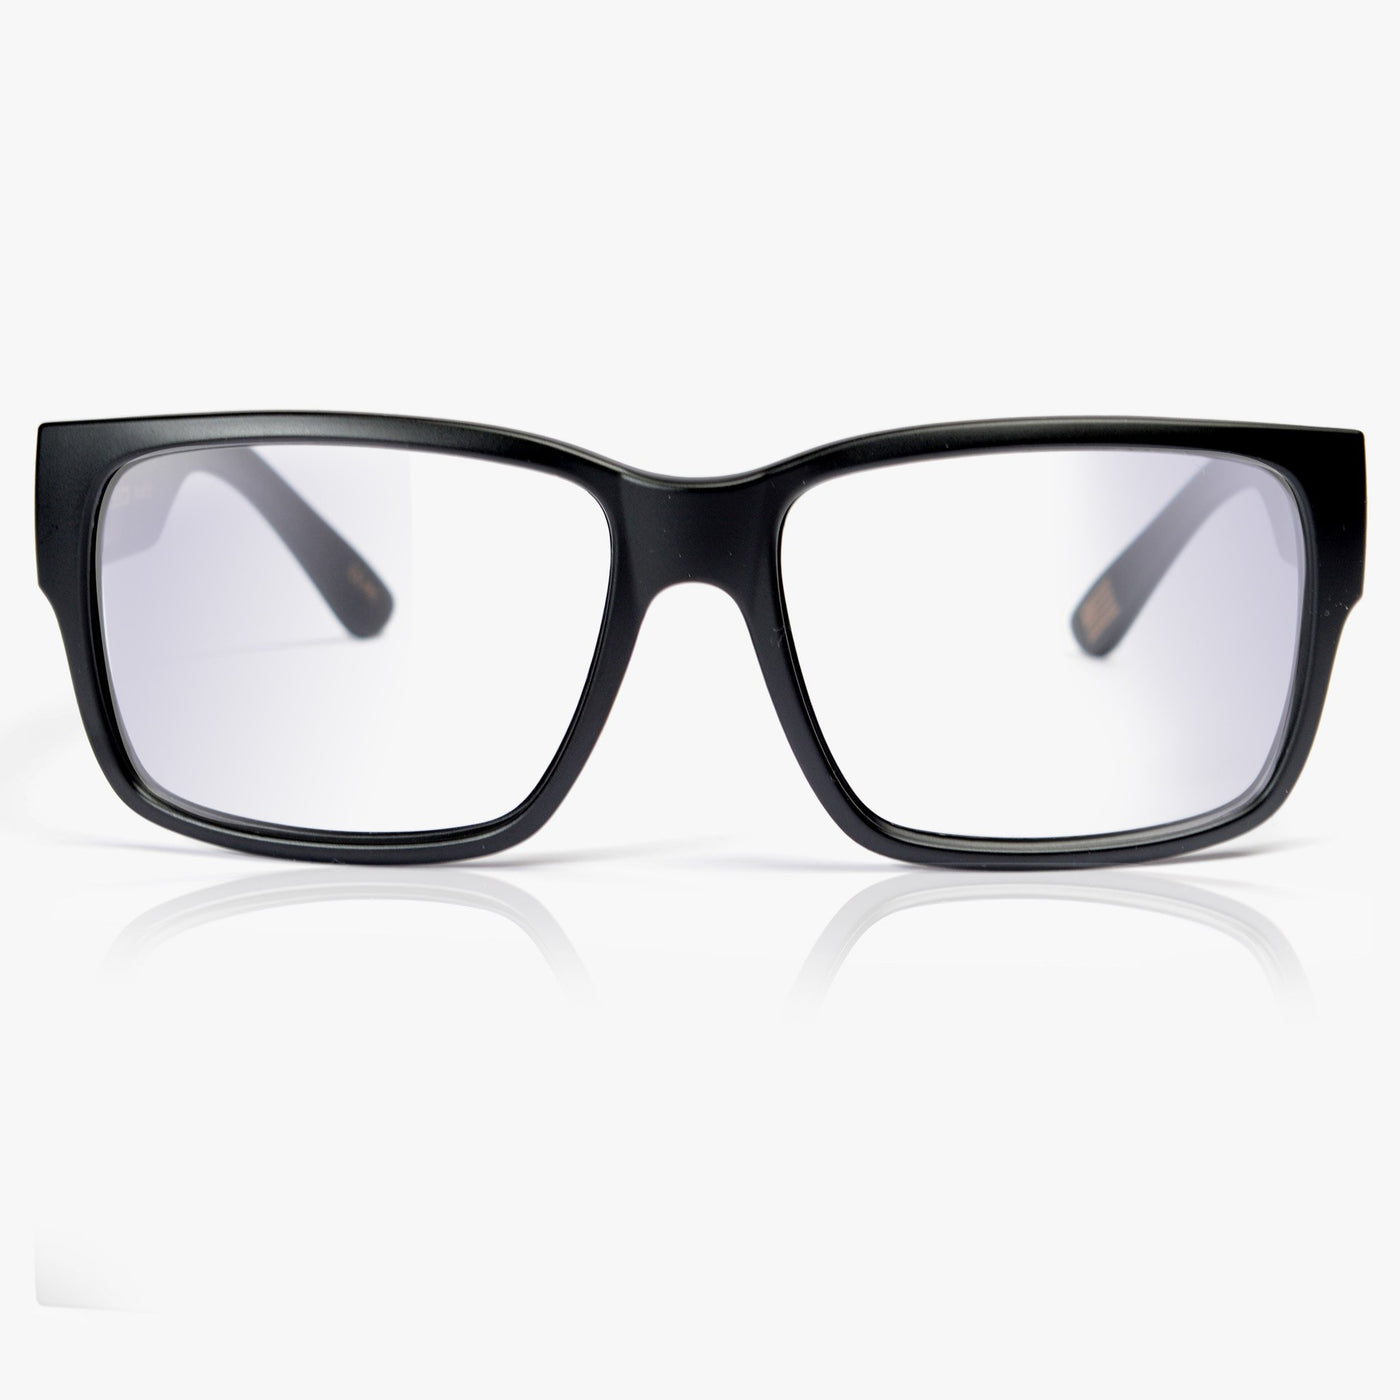 Big black frame blue light glasses